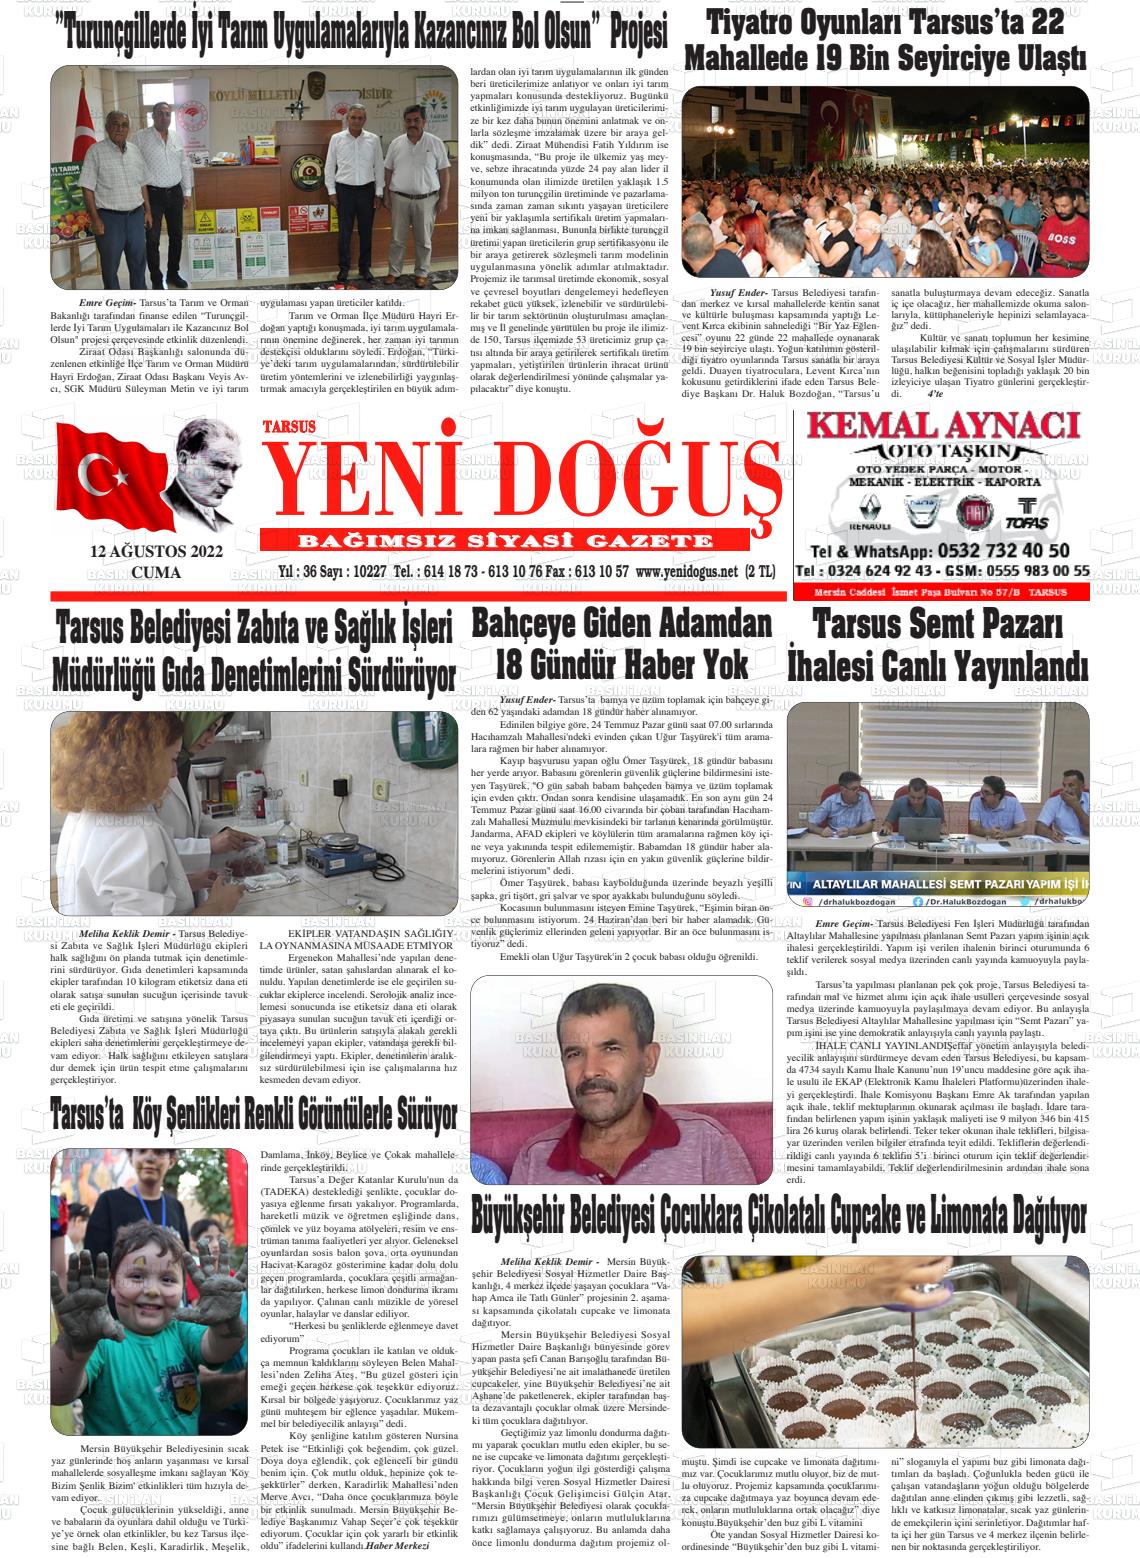 12 Ağustos 2022 Tarsus Yeni Doğuş Gazete Manşeti